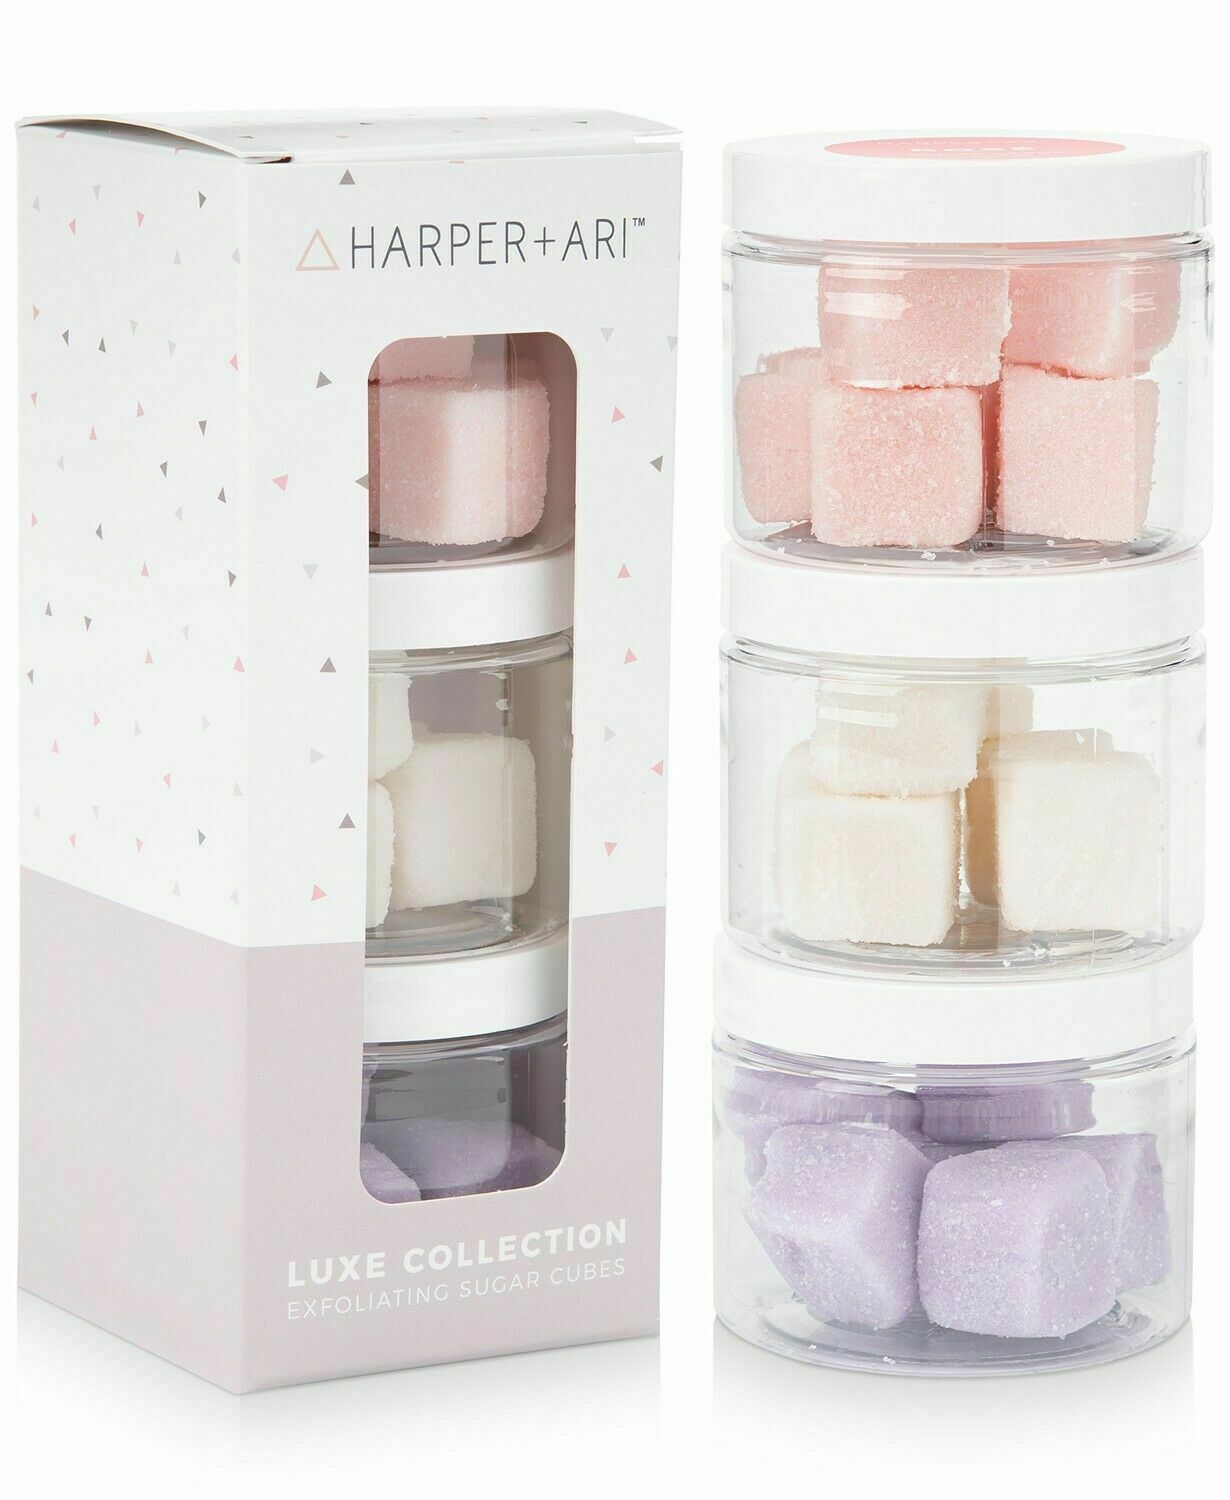 Harper + Ari Luxe Collection Exfoliating Sugar Cubes Gift Set Rose Dream Coconut - $16.00